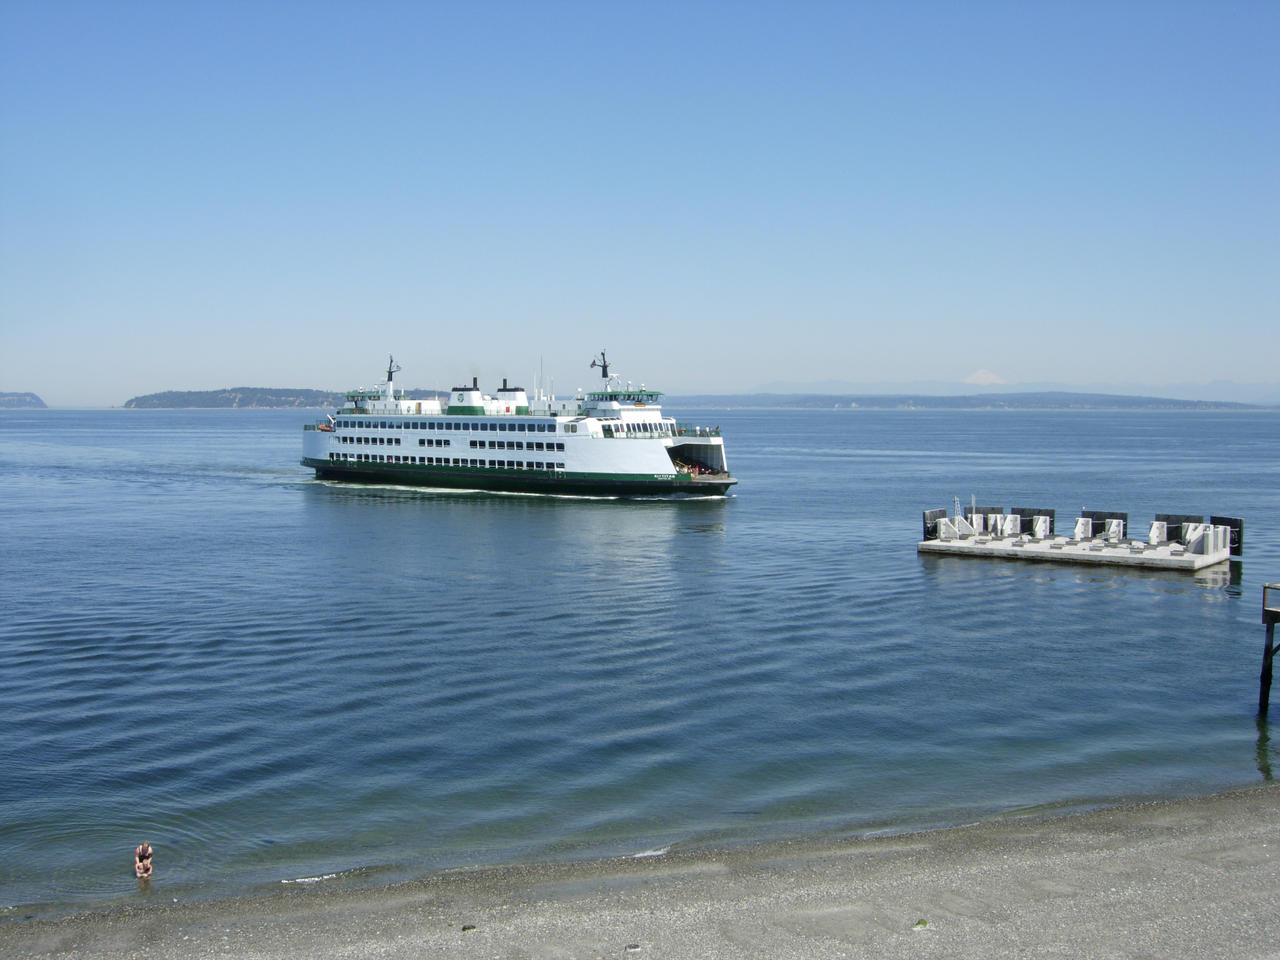 Mukilteo Ferry - Washington State